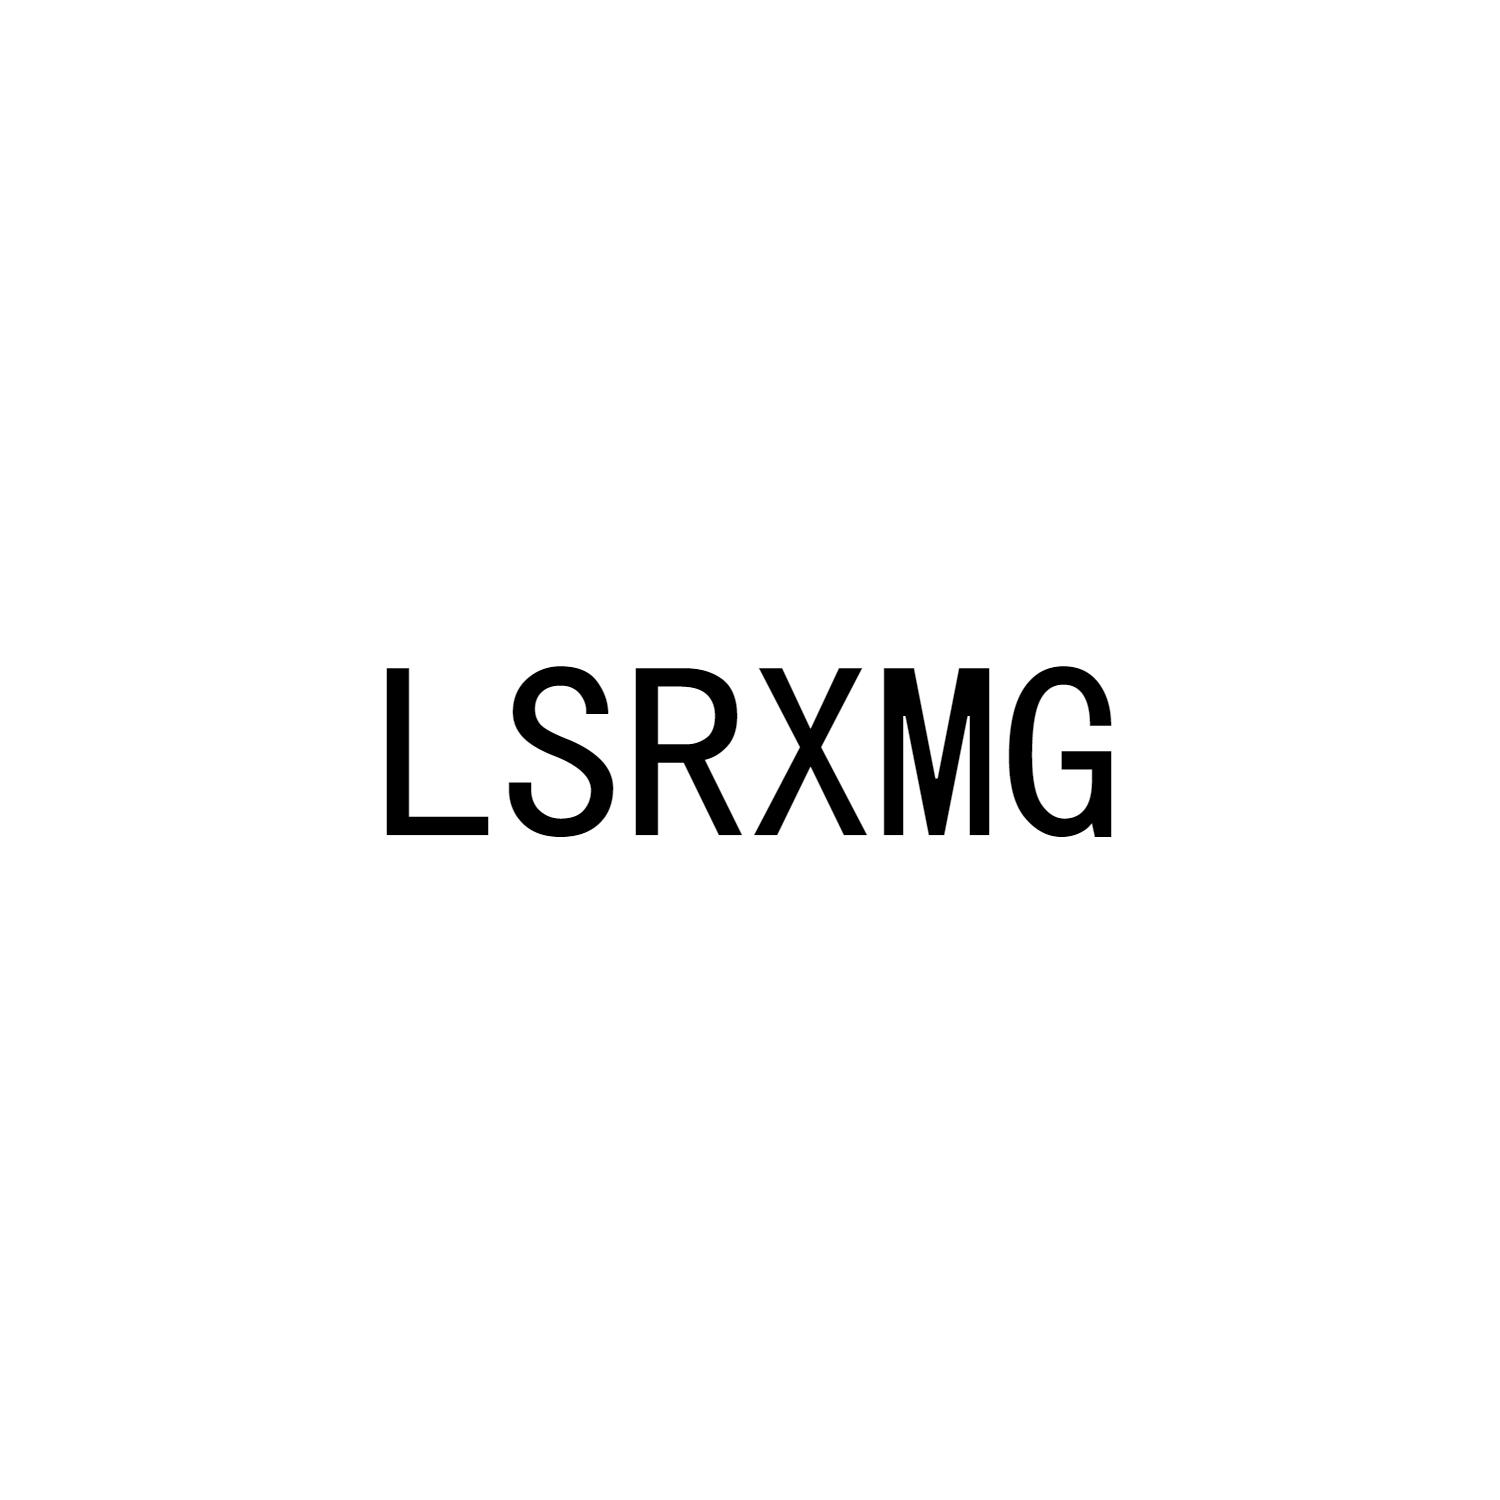 LSRXMG